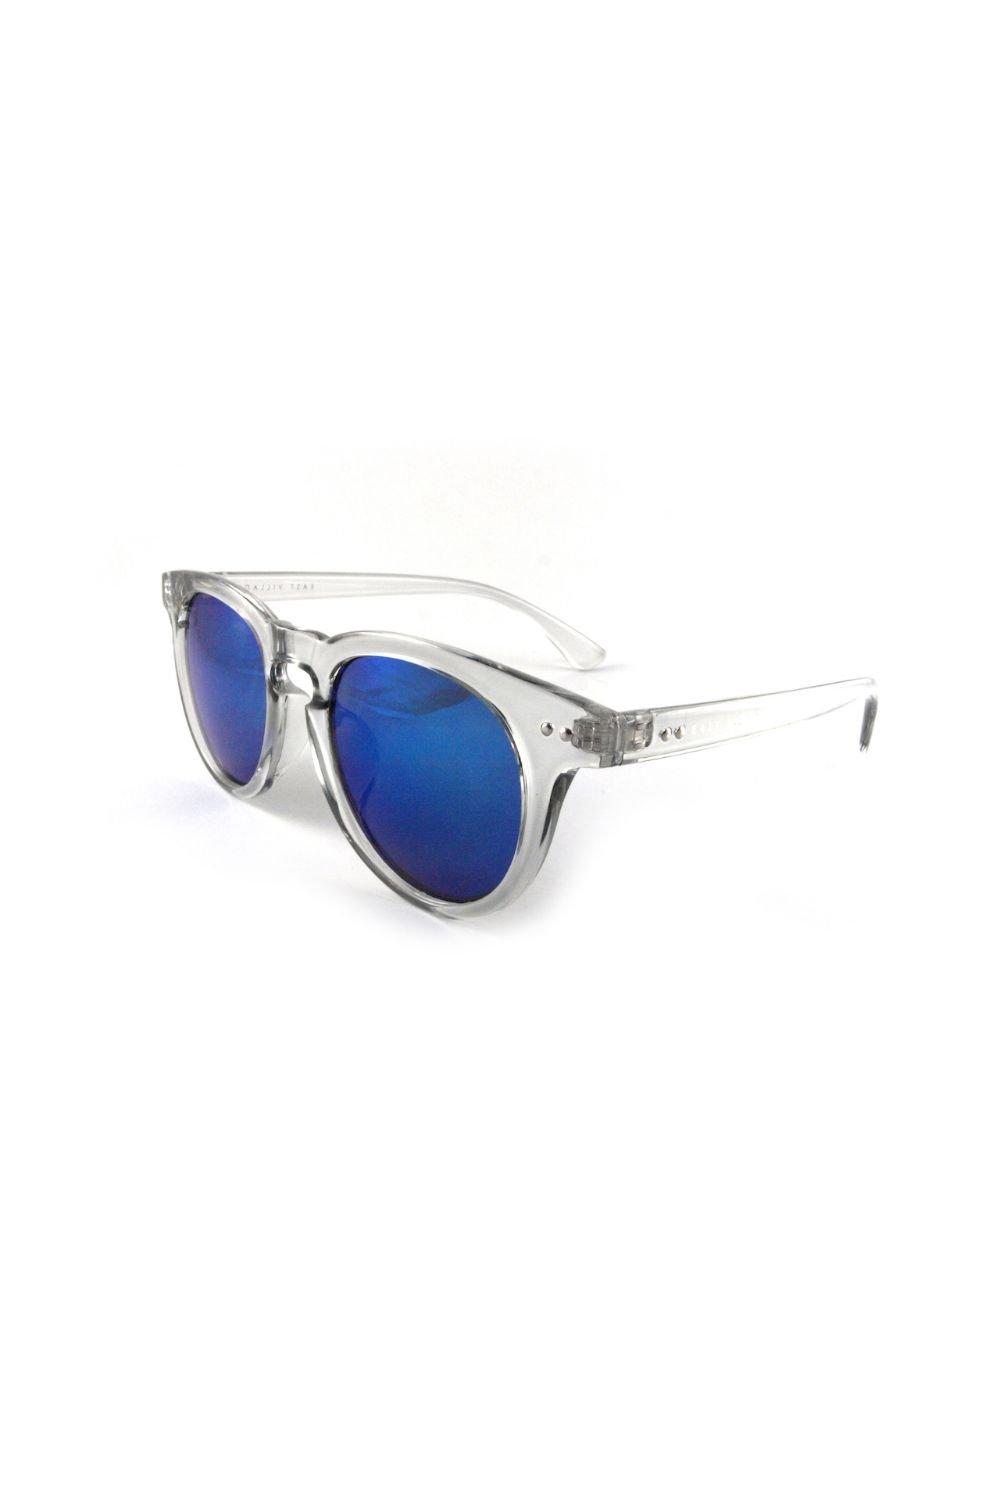 солнцезащитные очки авиаторы jordan east village серебро Лунные солнцезащитные очки East Village, прозрачный